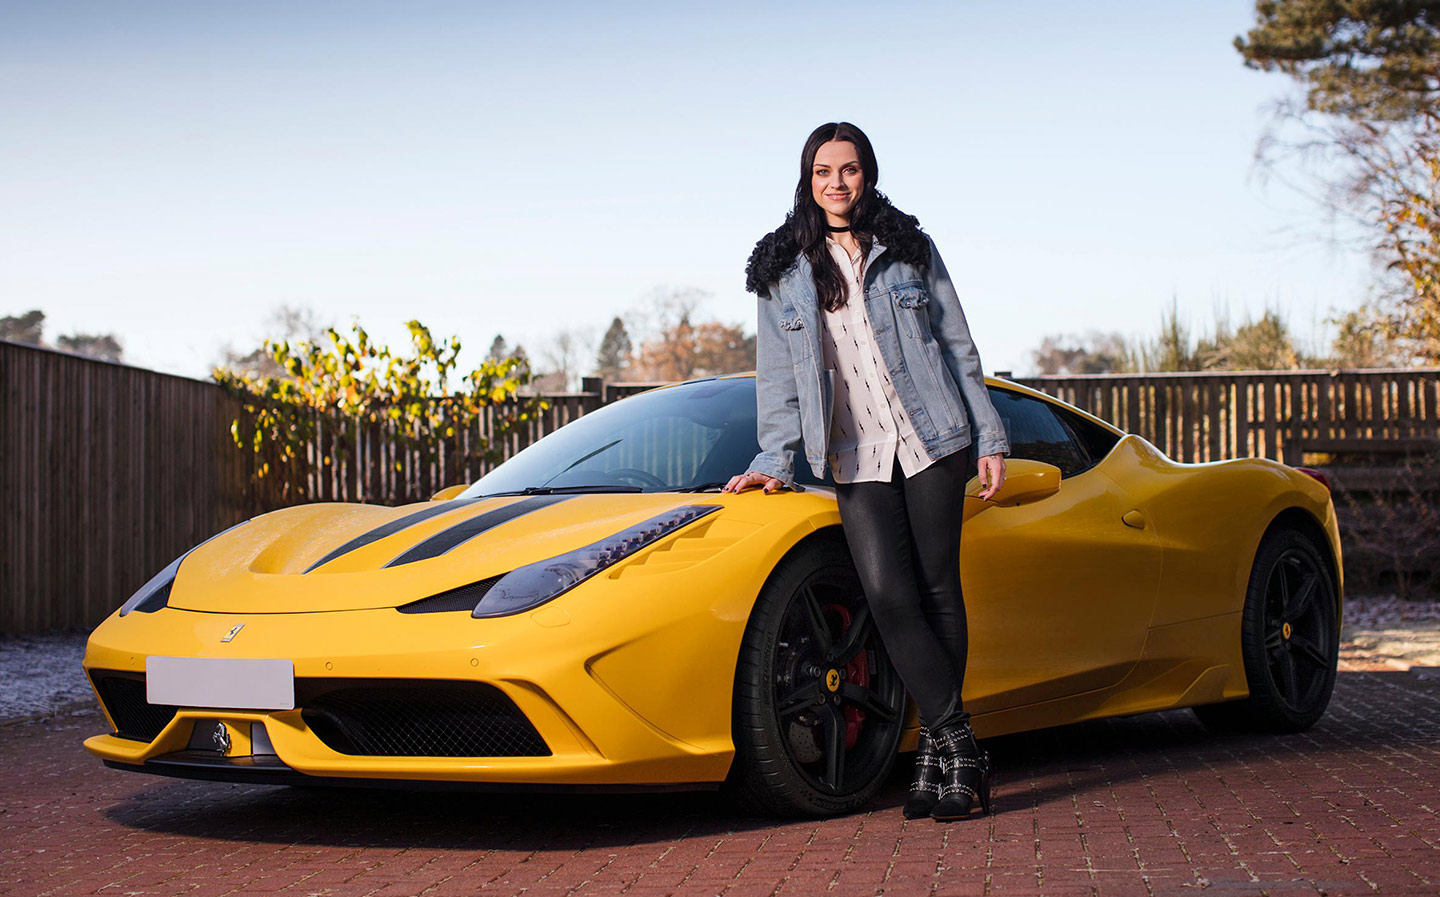 Amy Macdonald and her yellow Ferrari.